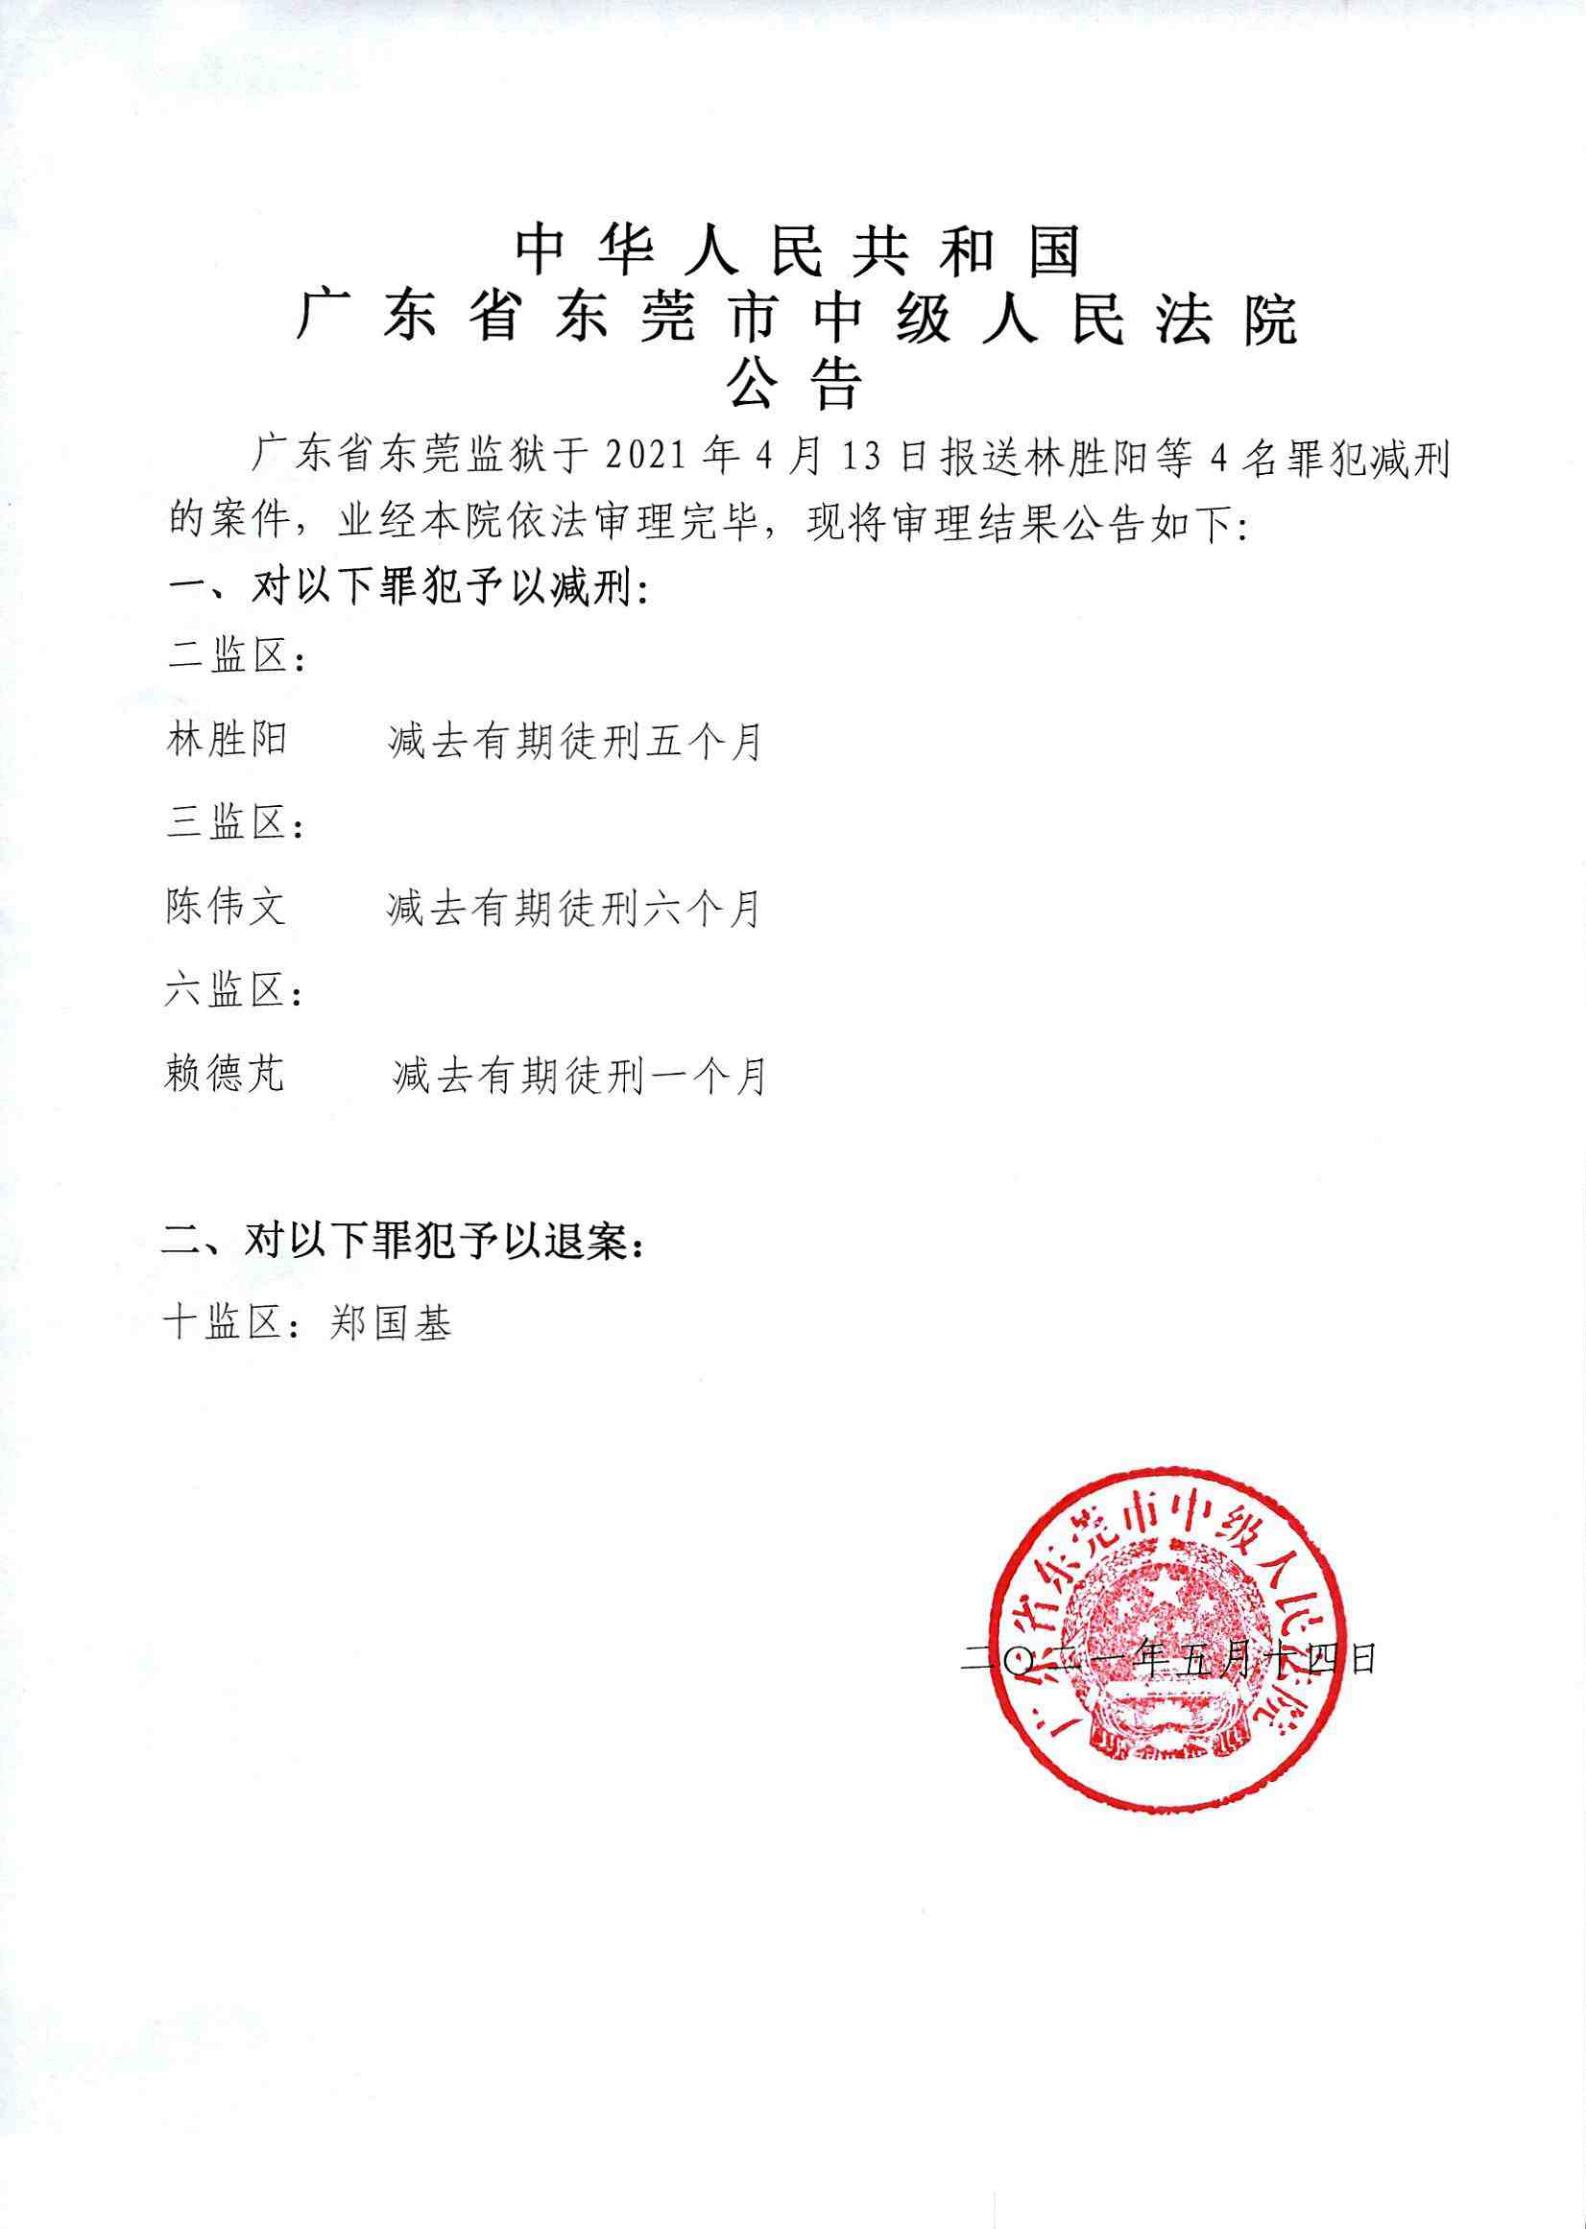 东莞市中级人民法院公告21.5.14_00.jpg